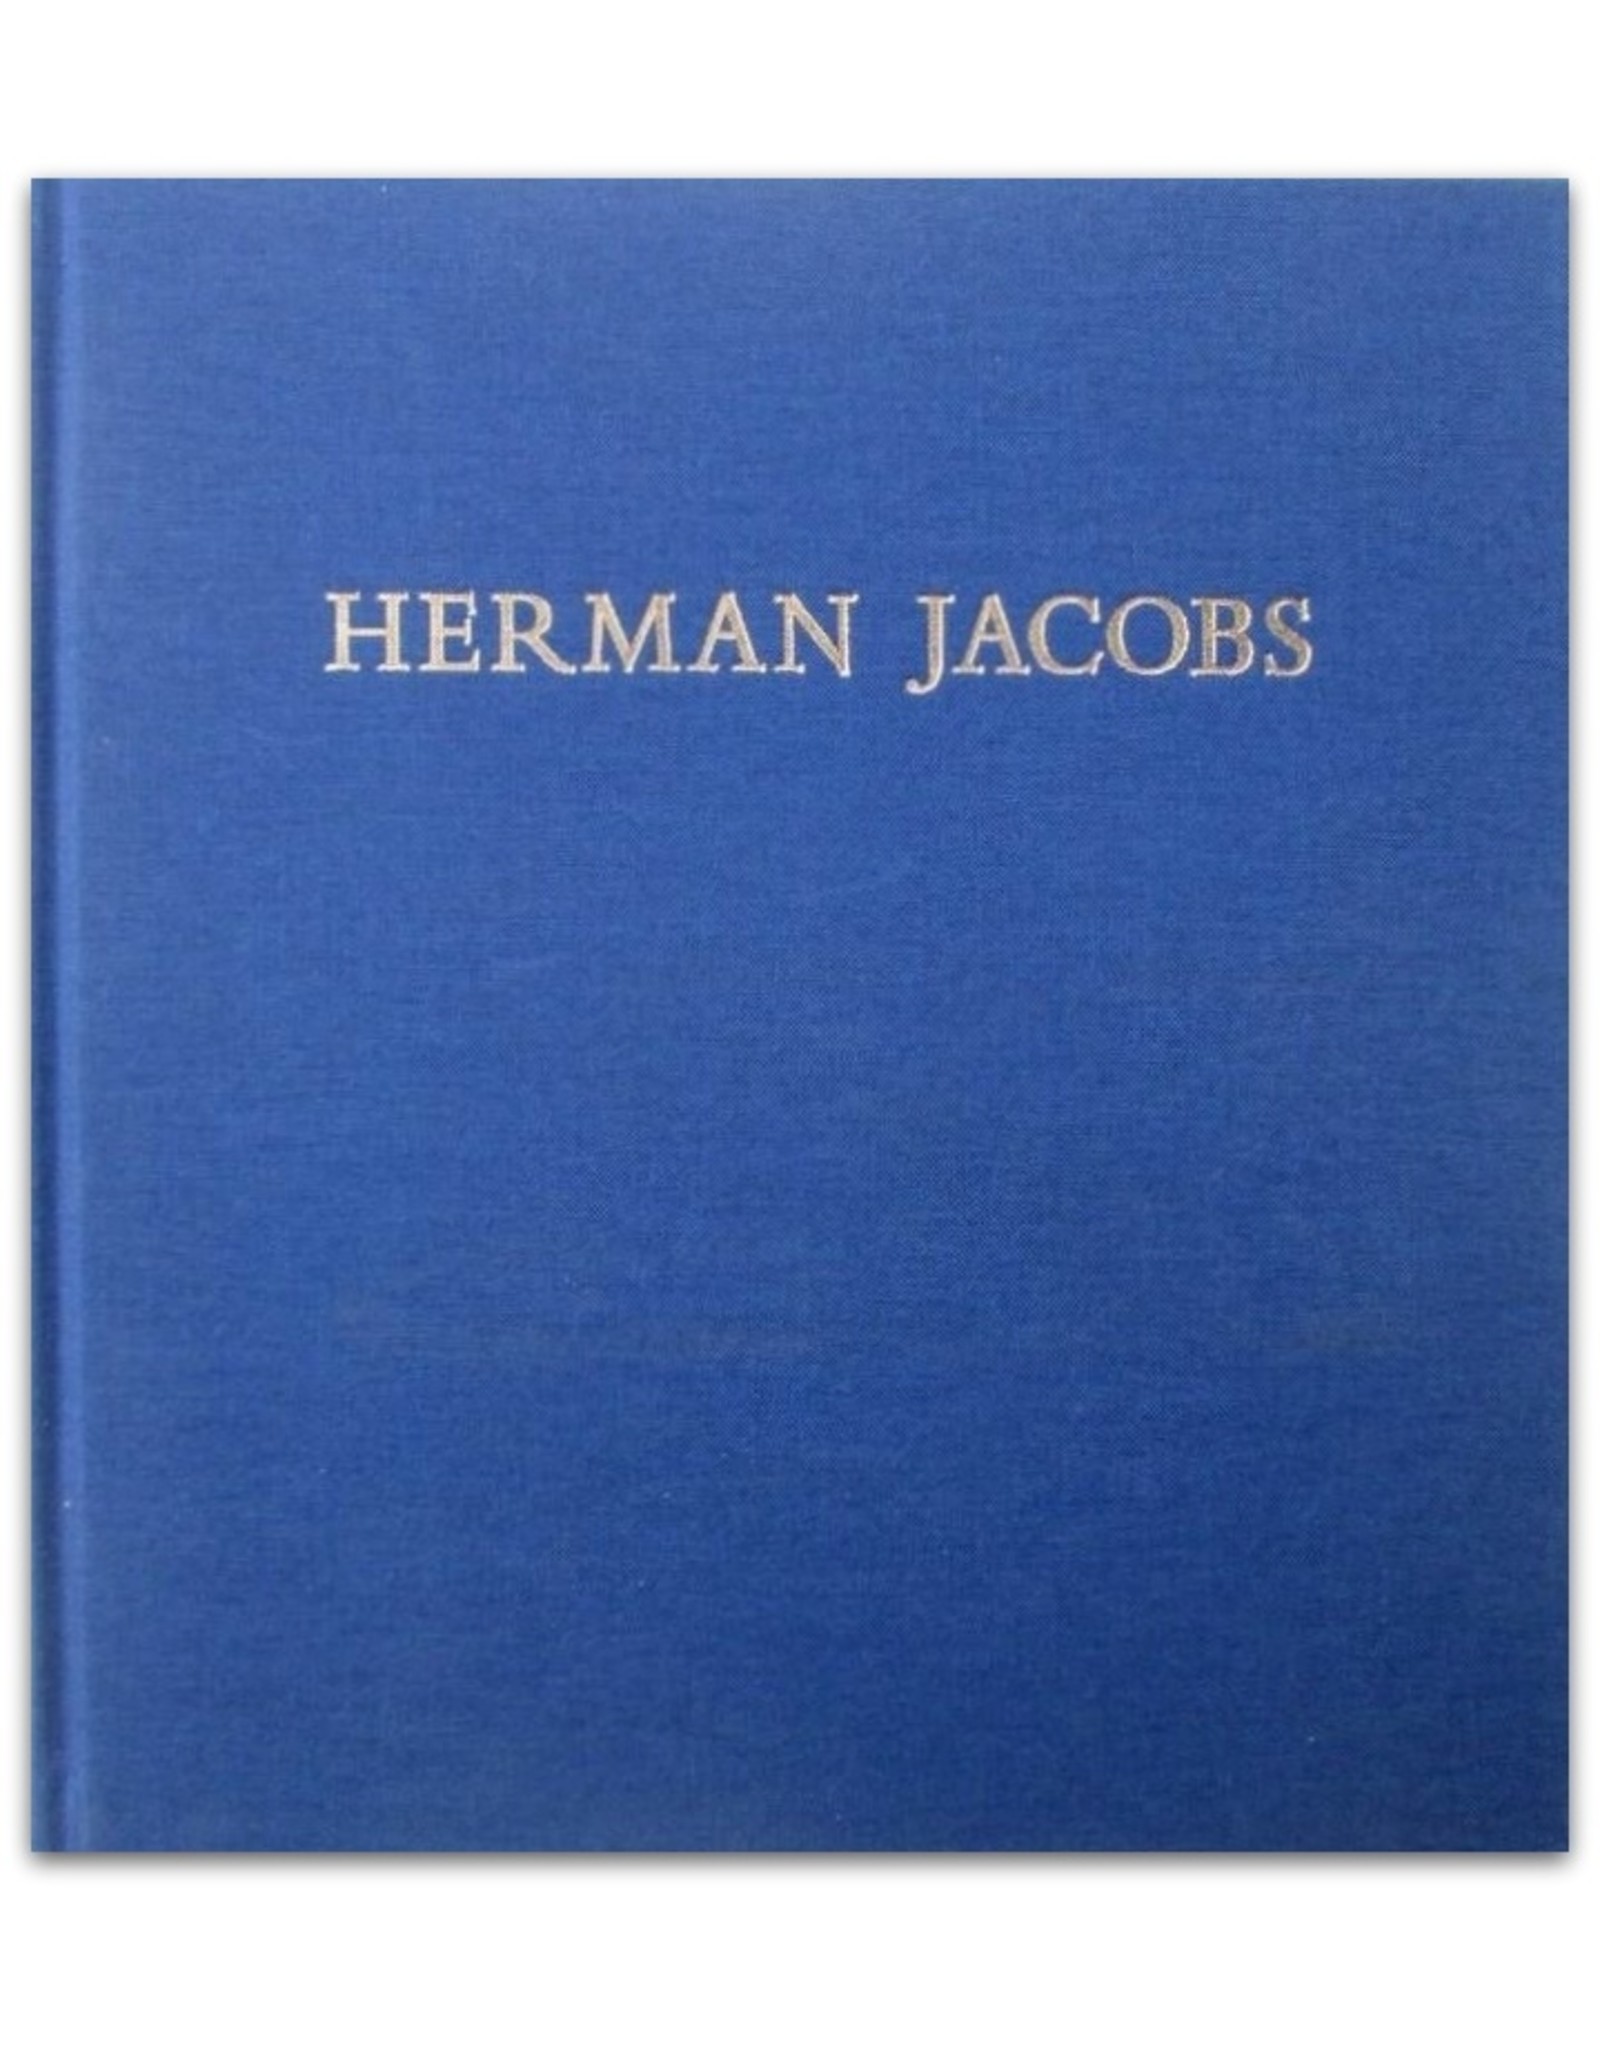 Herman Jacobs - Kunstschilder